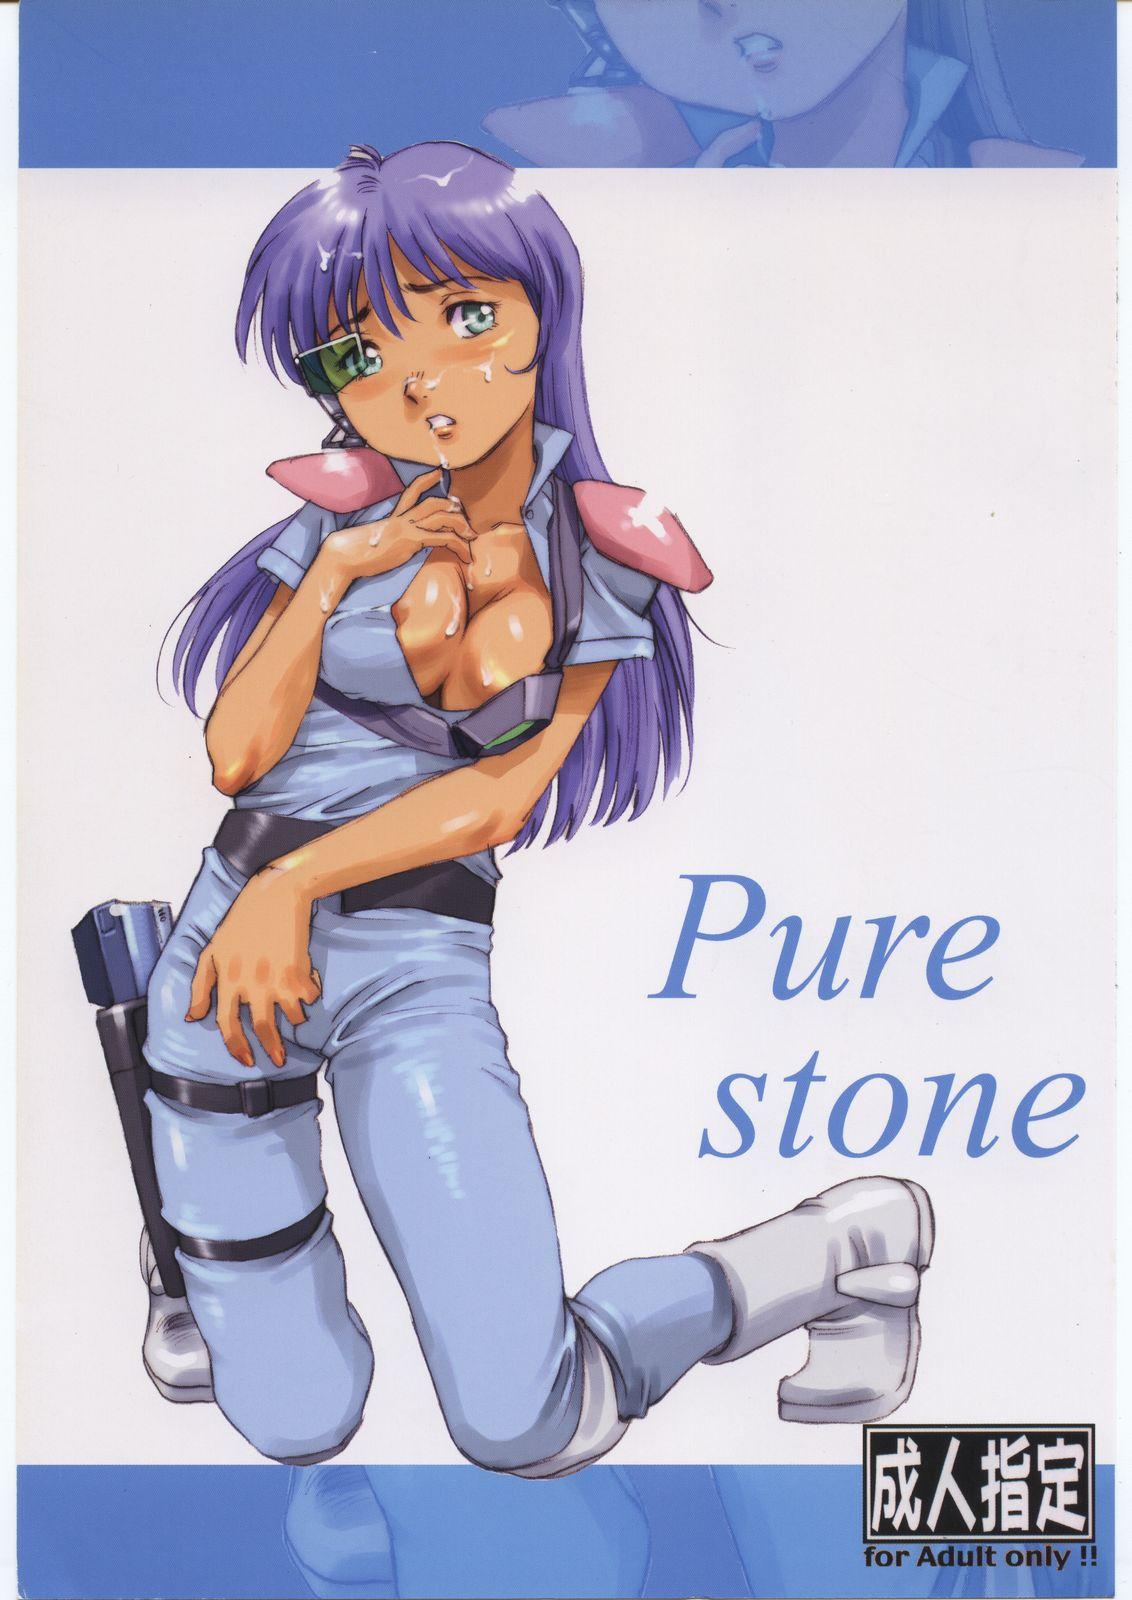 Pure stone 0